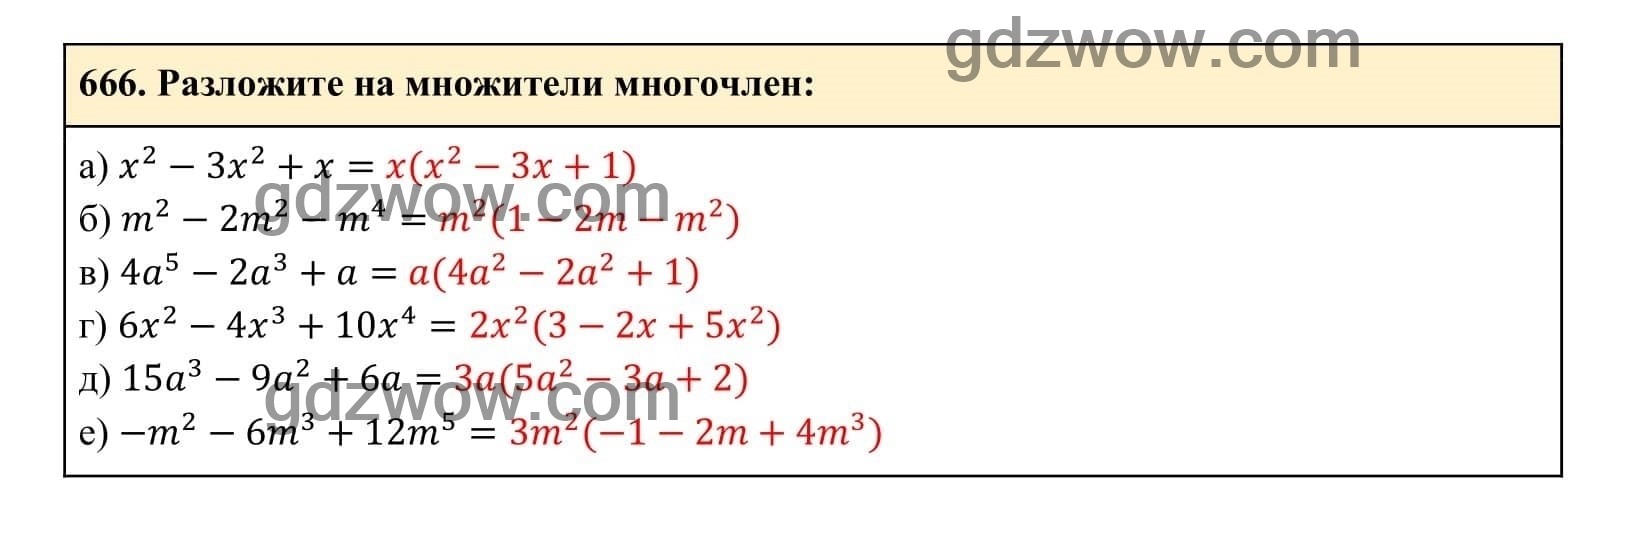 Упражнение 666 - ГДЗ по Алгебре 7 класс Учебник Макарычев (решебник) - GDZwow